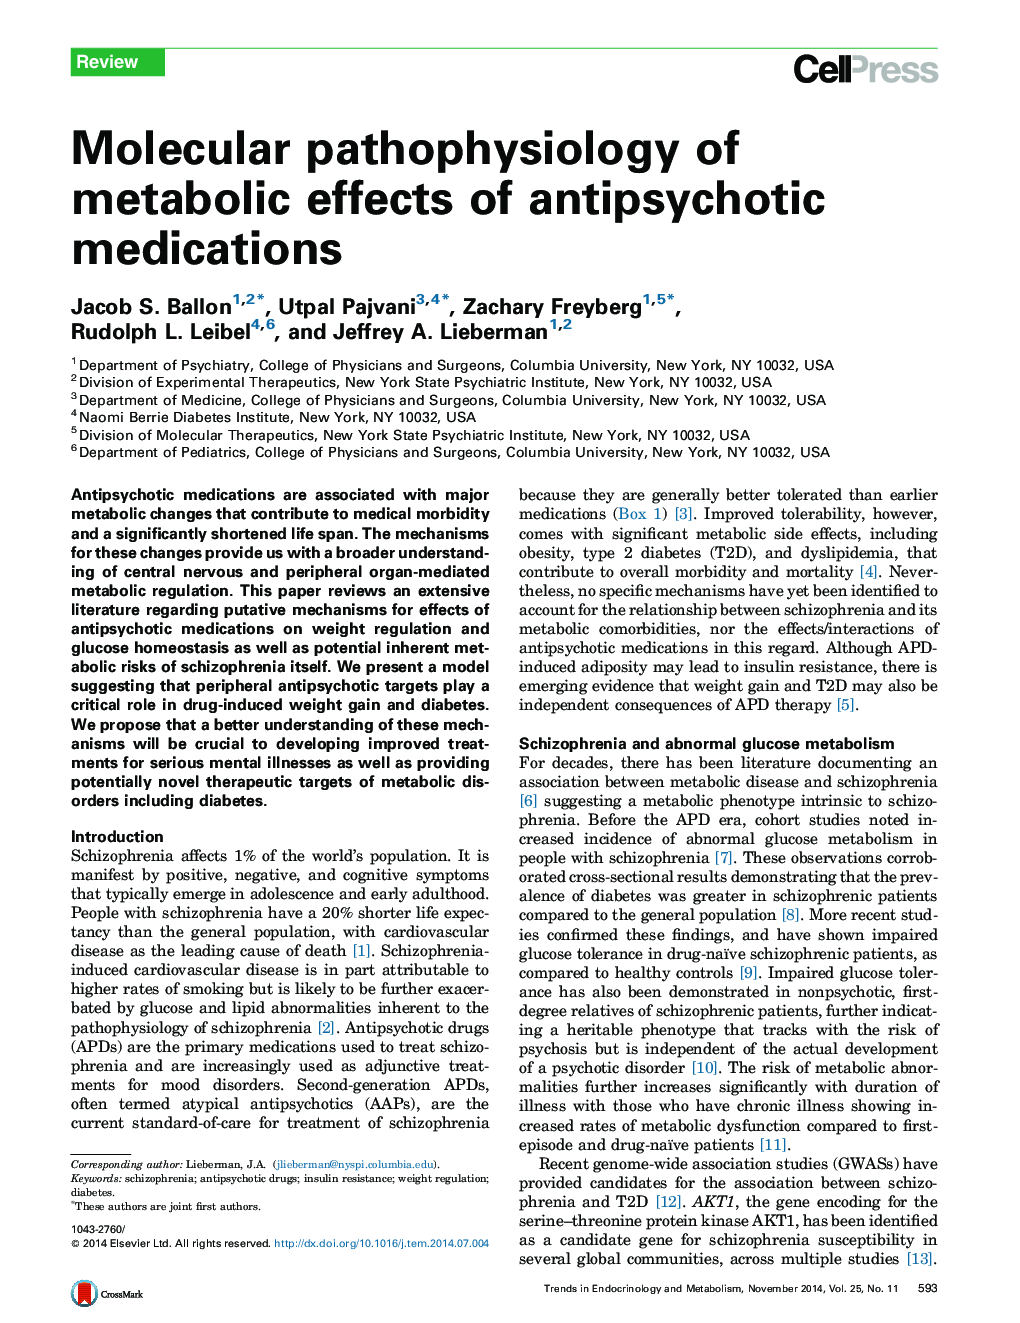 پاتوفیزیولوژی مولکولی اثرات متابولیکی داروهای ضد پریشیوتیک 